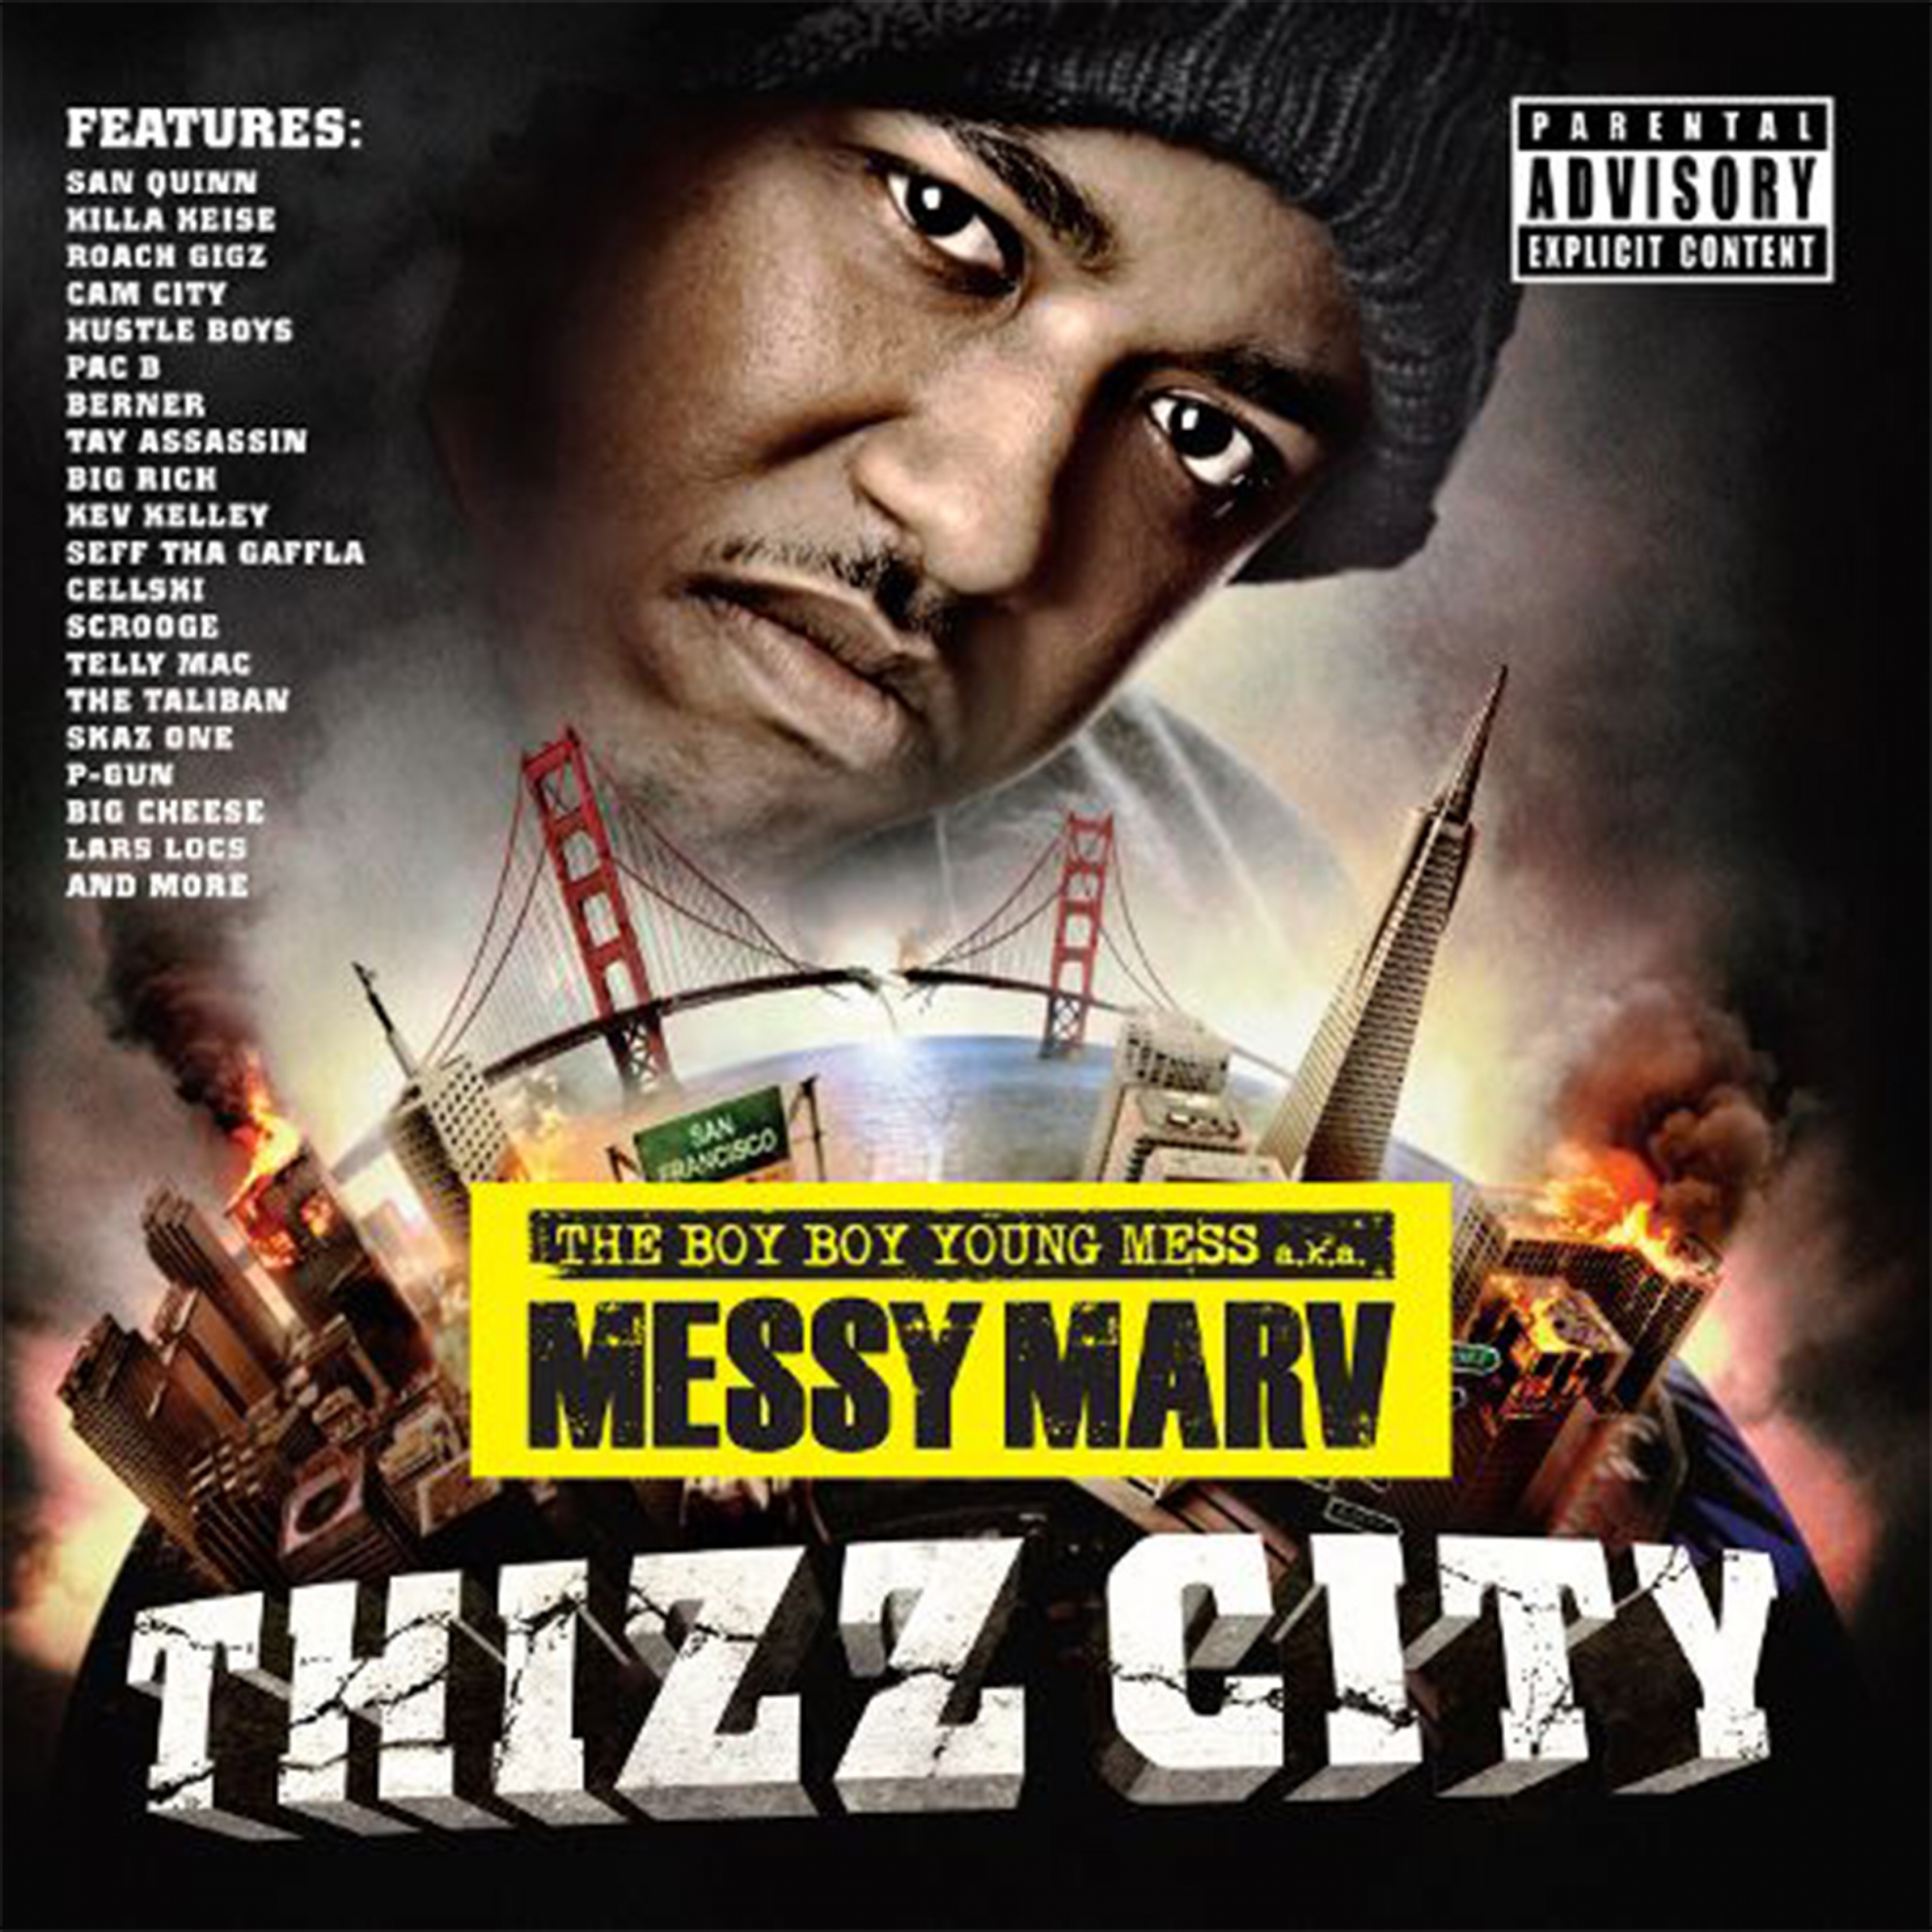 Messy Marv Presents: Thizz City